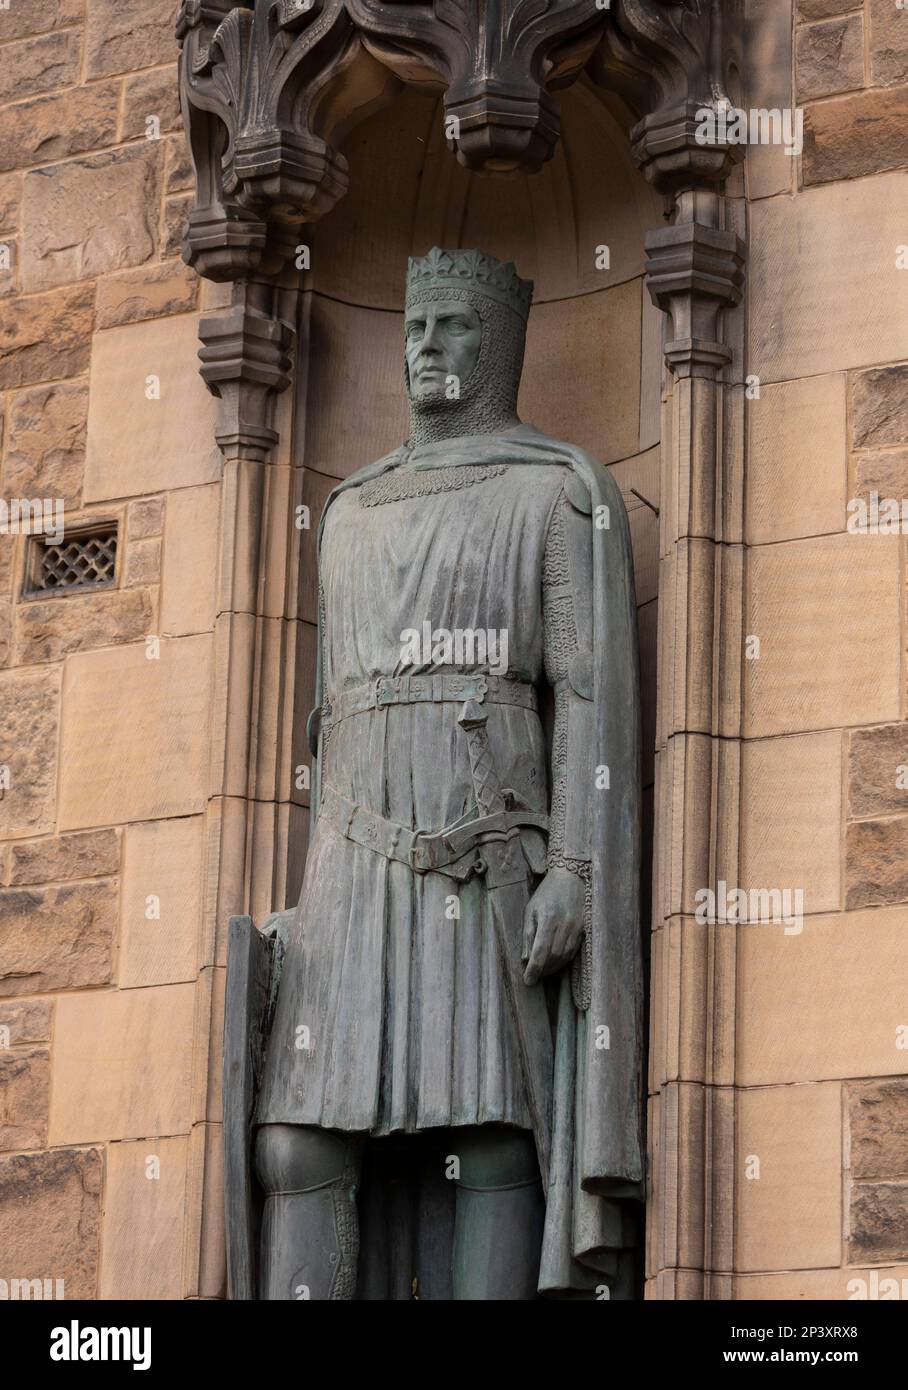 ÉDIMBOURG, ÉCOSSE, EUROPE - Statue de Robert the Bruce, roi des Écossais, à l'entrée du château d'Édimbourg. Sculpteur Thomas Clapperton. Banque D'Images